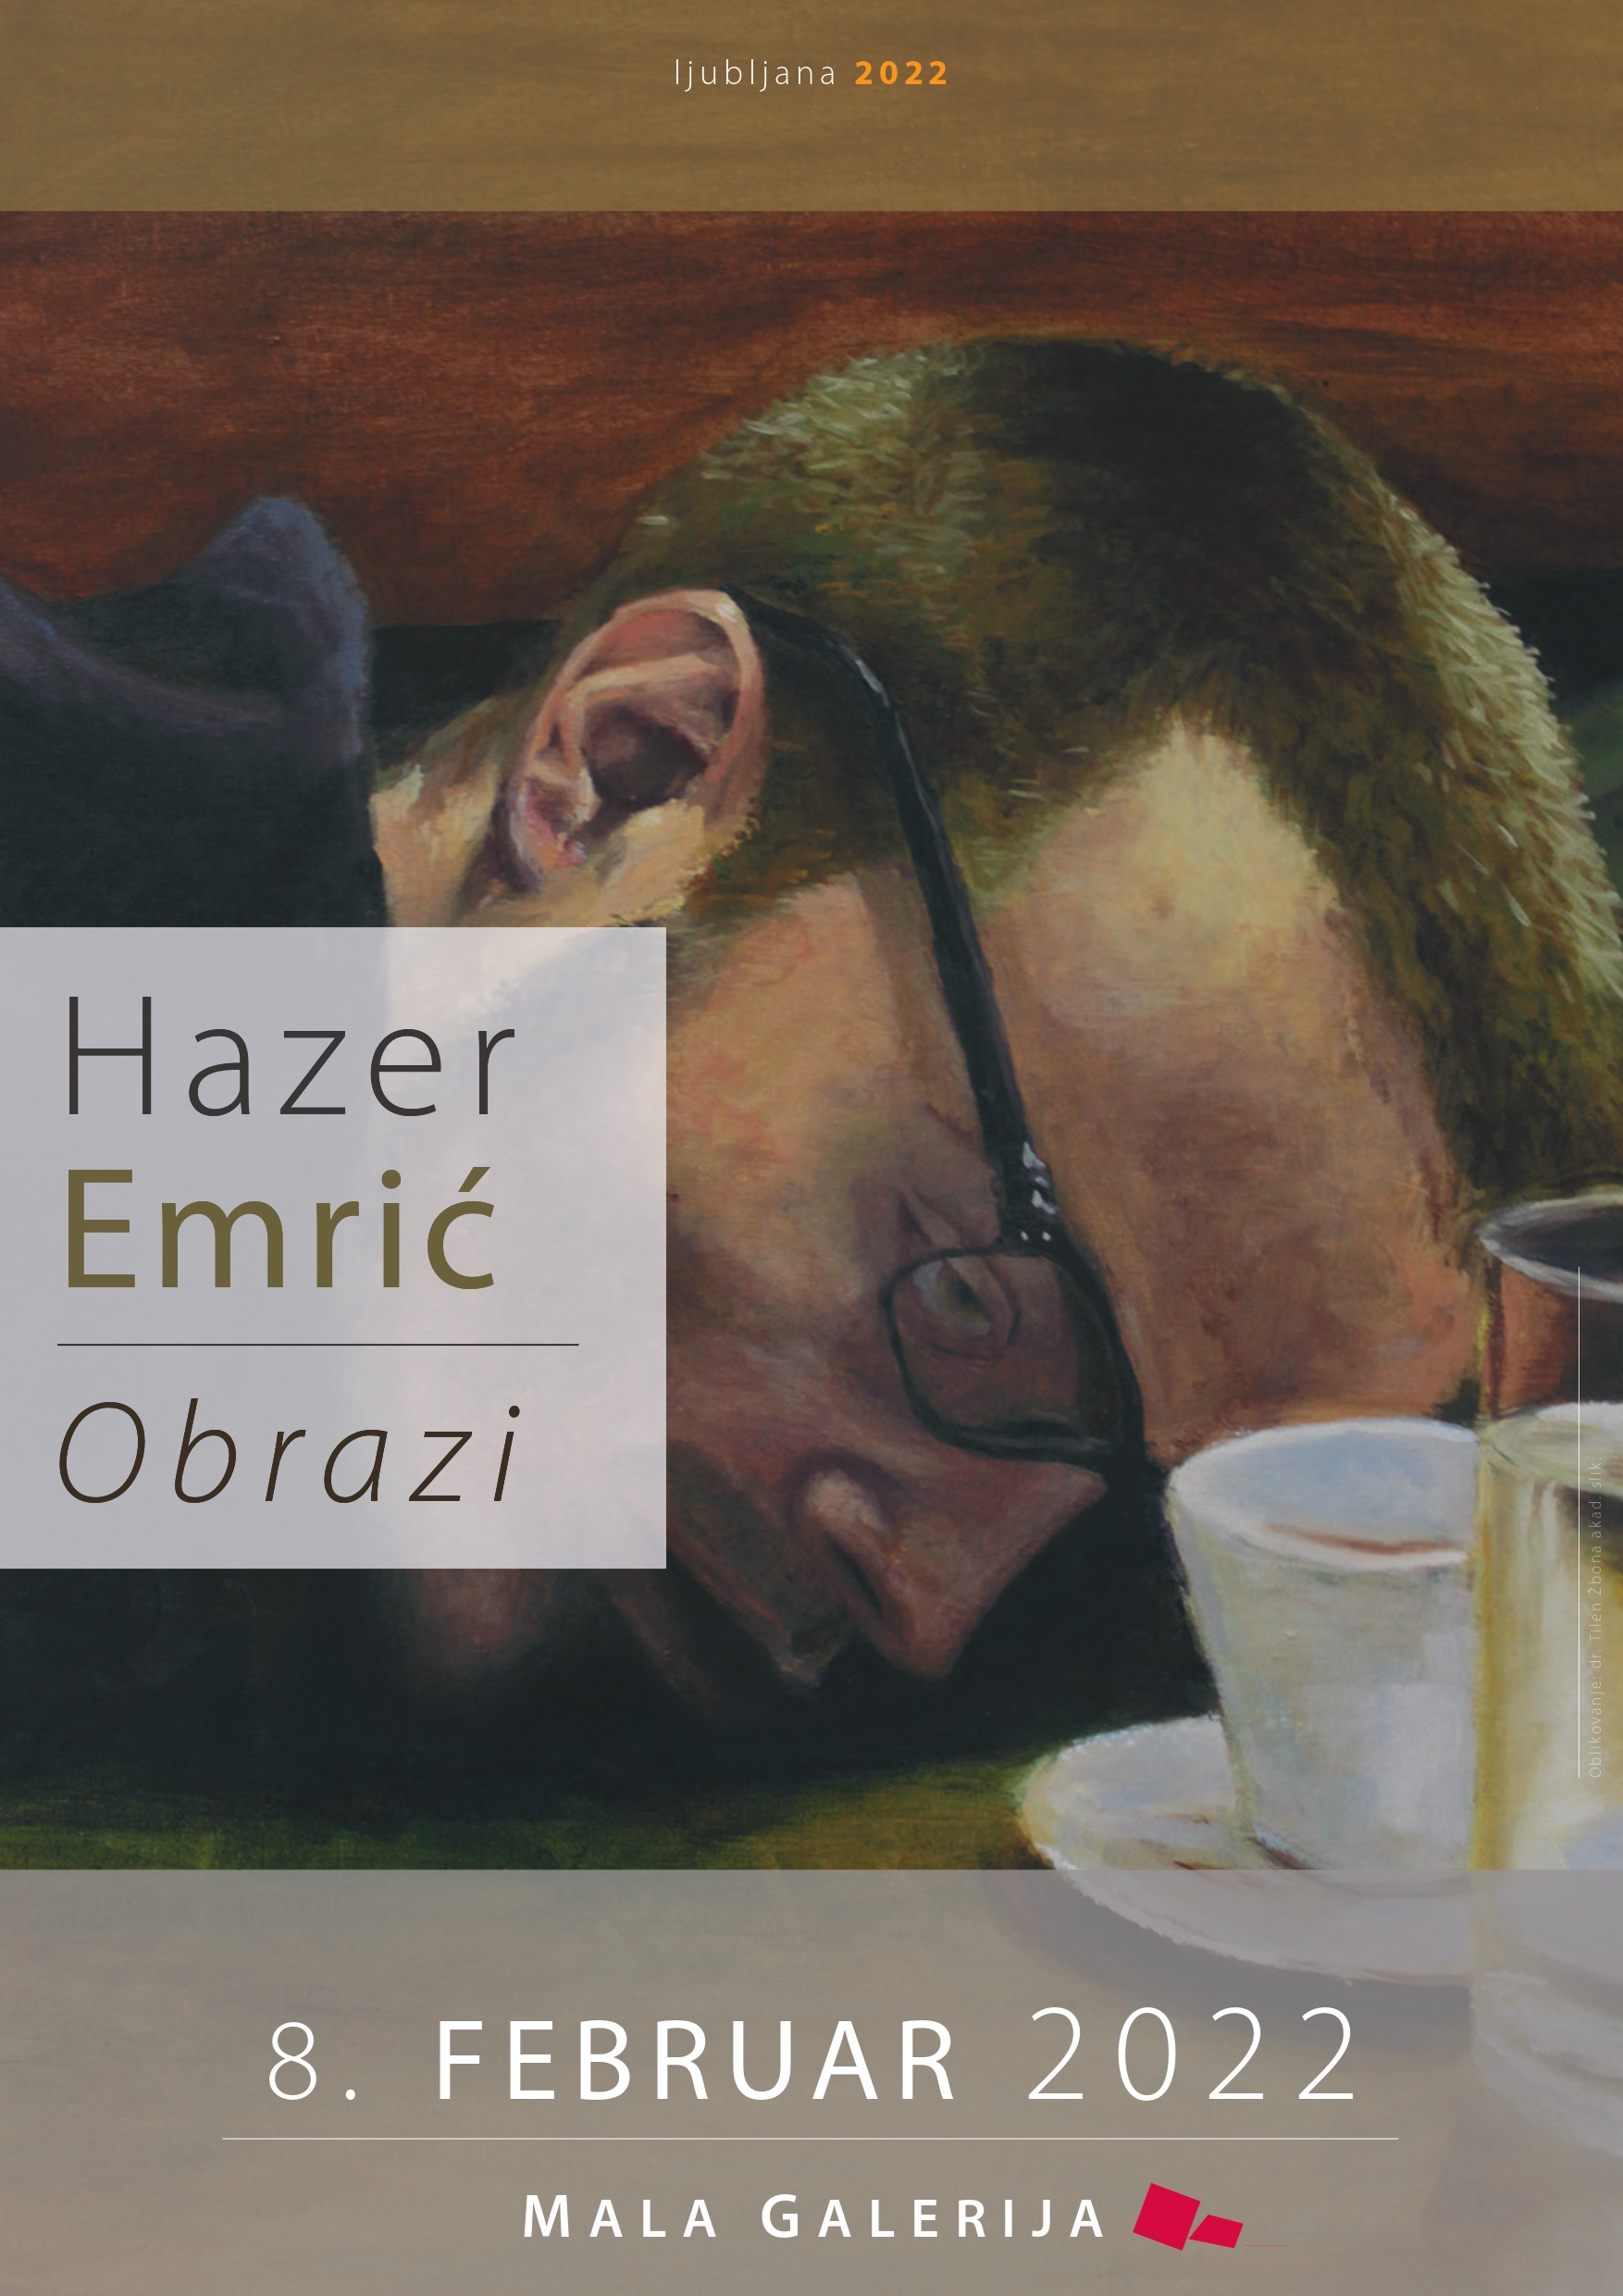 Прва самостална изложба студента сликарства Хазера Емрића